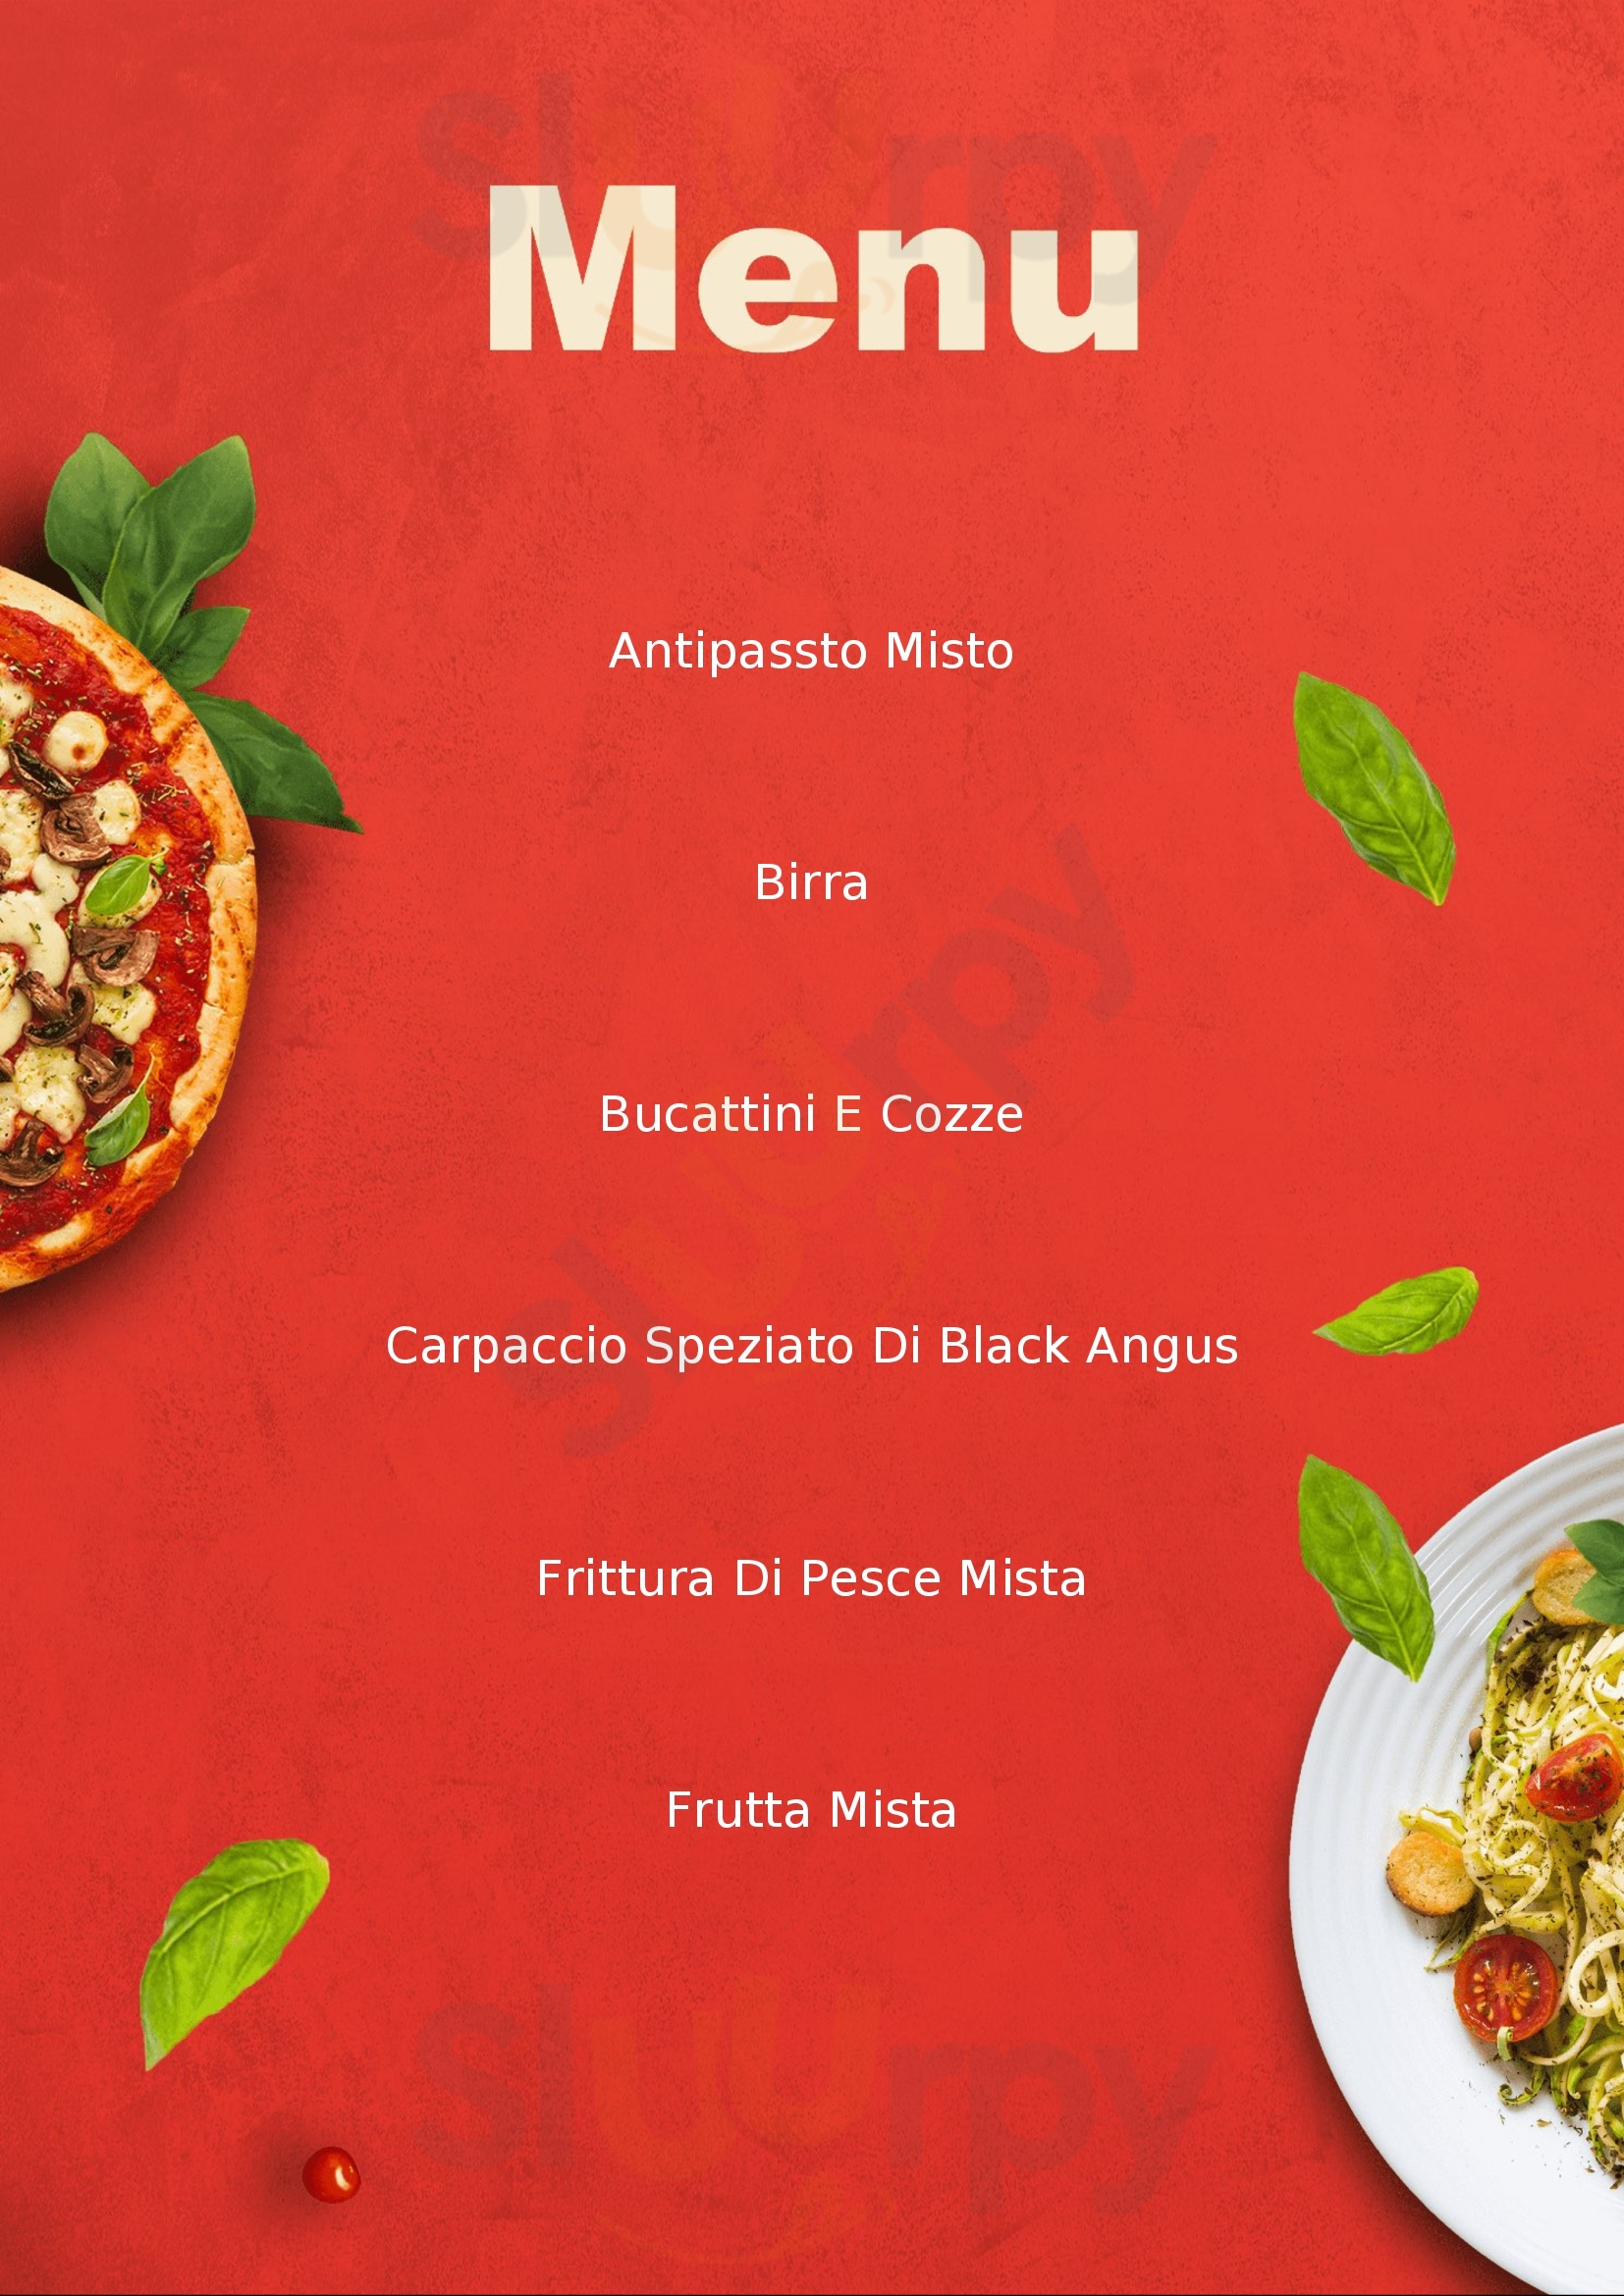 Scambulet Pizzeria Corato menù 1 pagina